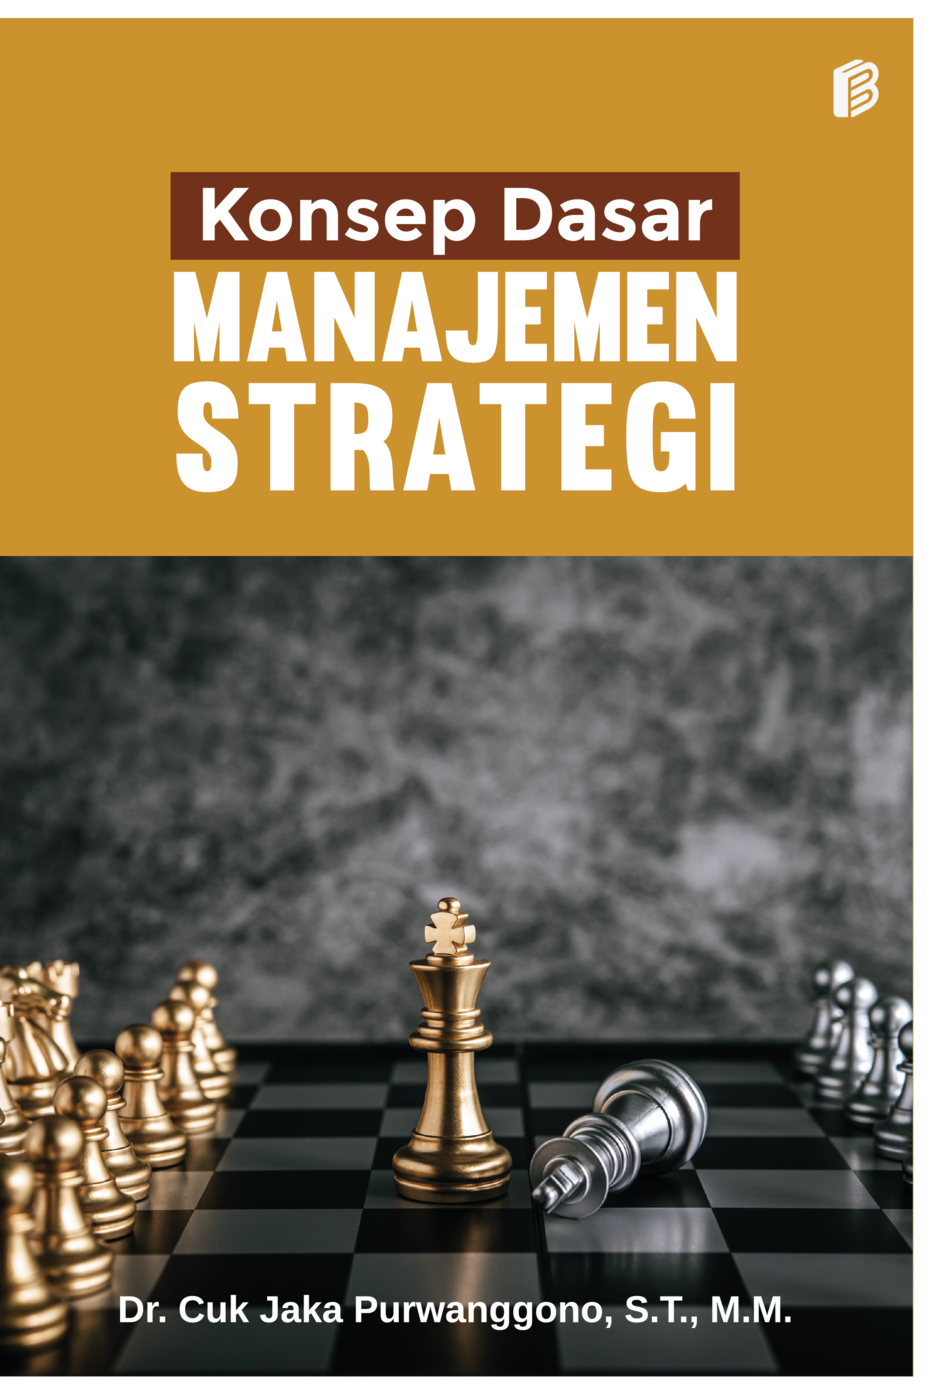 cover/(14-10-2022)konsep-dasar-manajemen-strategi.png